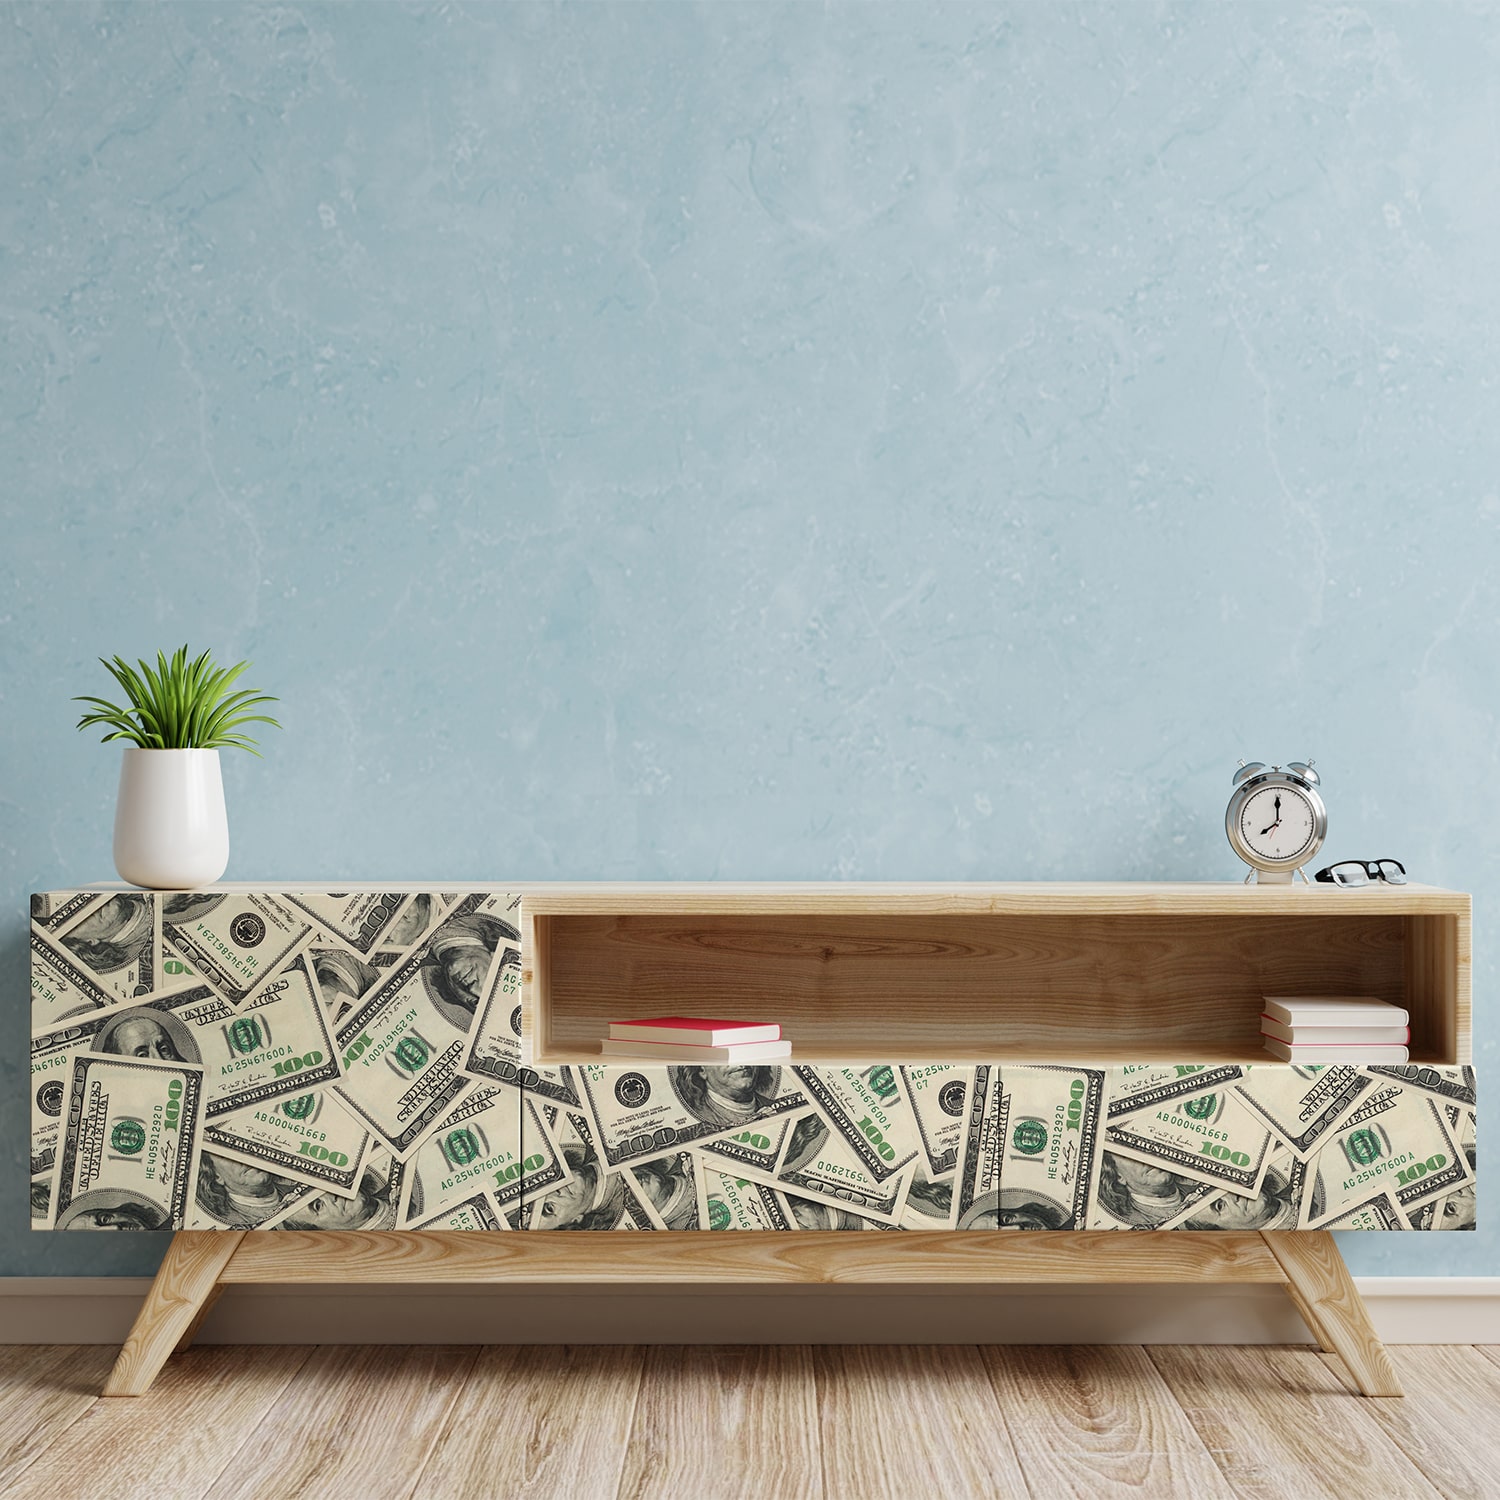 PP61-meuble-papier-peint-adhesif-decoratif-revetement-vinyle-motifs-dollars-money-billet-renovation-meuble-mur-min